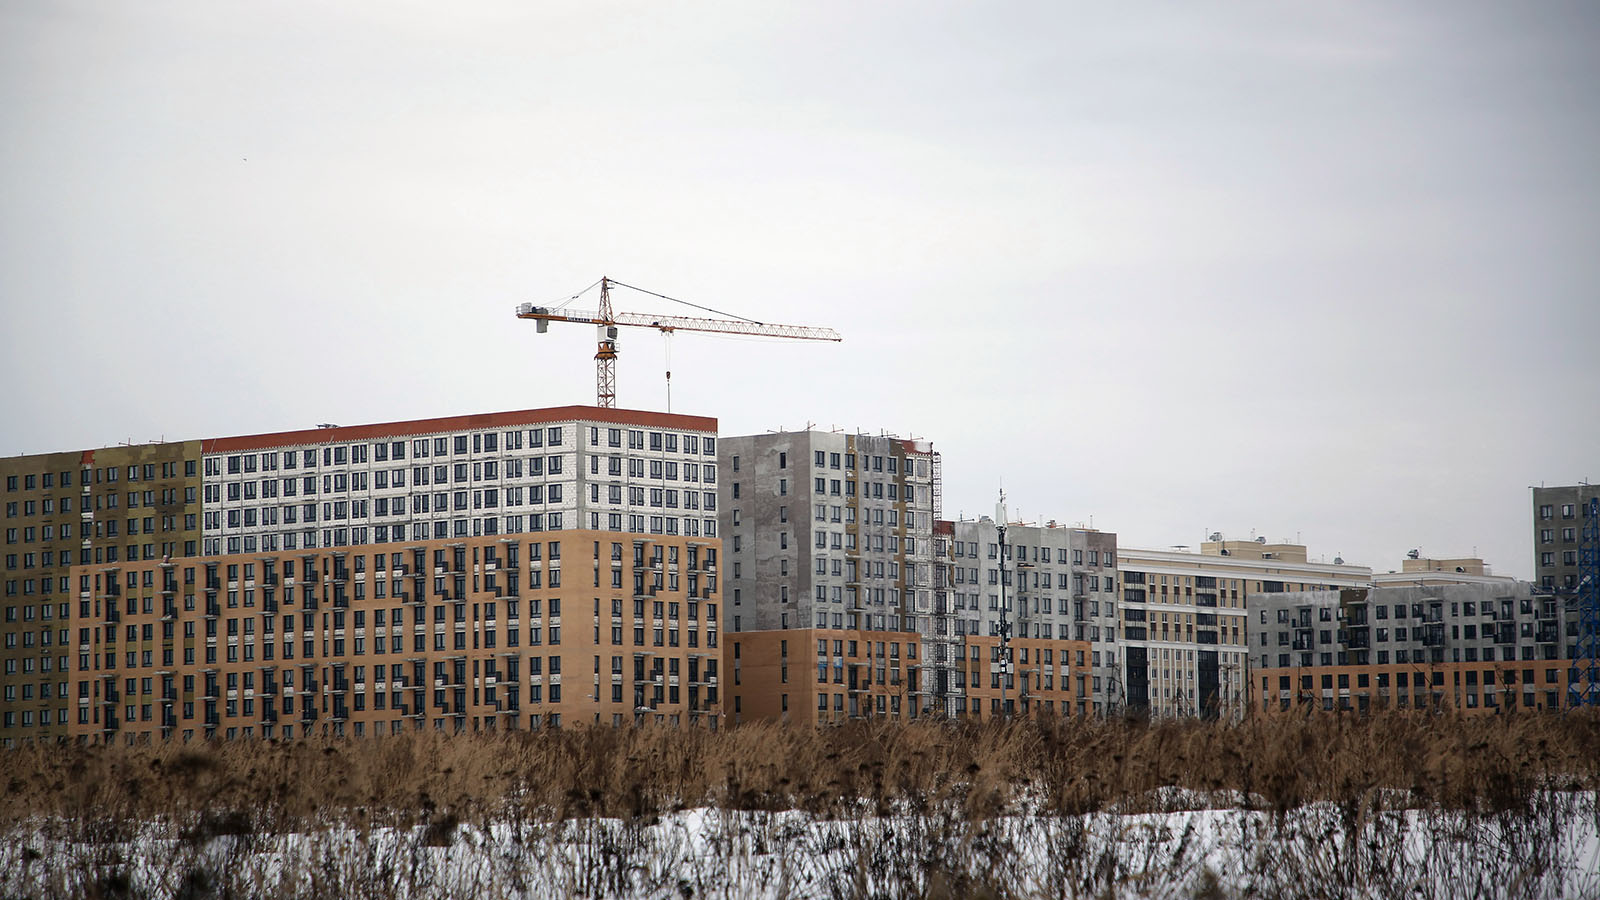 Ипотечный пузырь на русский лад: какие тревожные признаки есть на рынке недвижимости